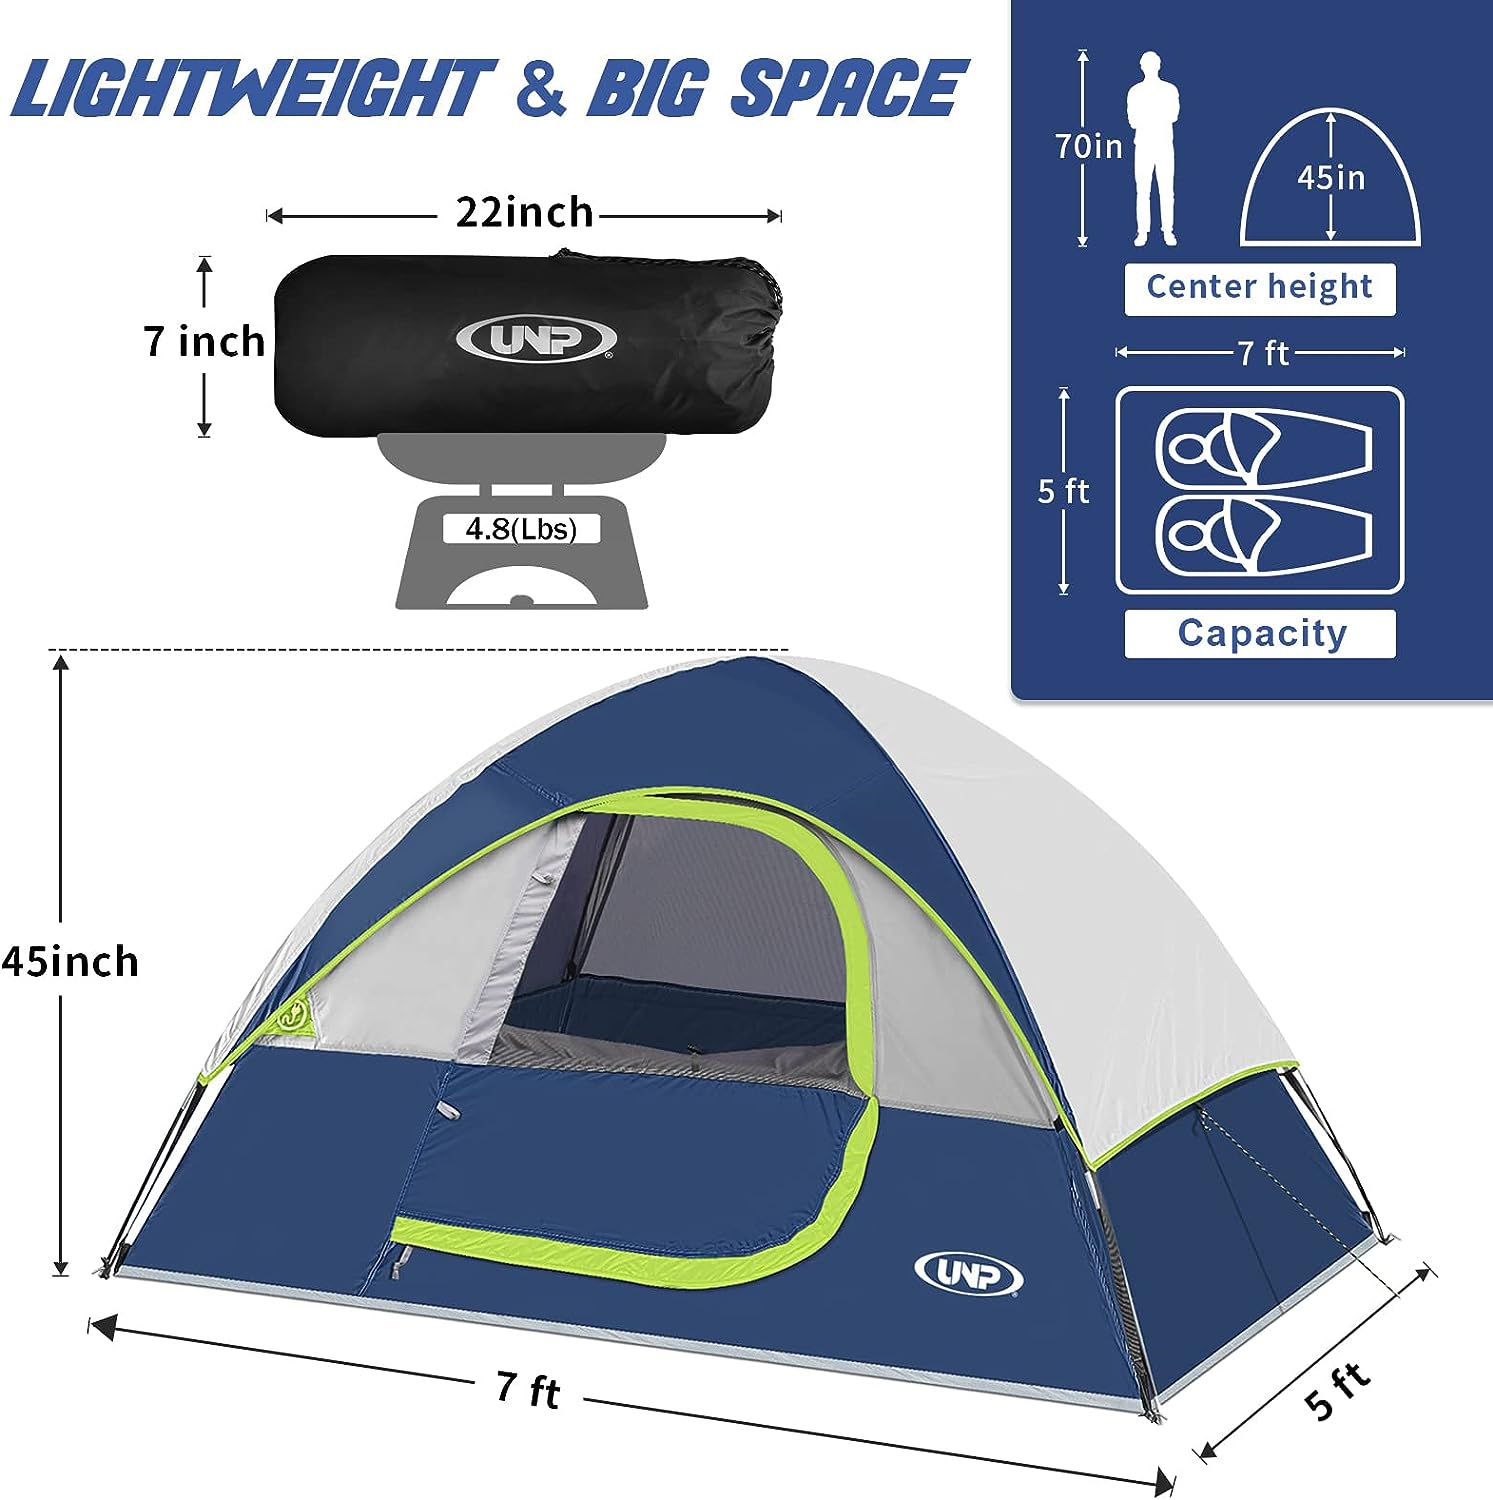 Unp Dome Tent Size